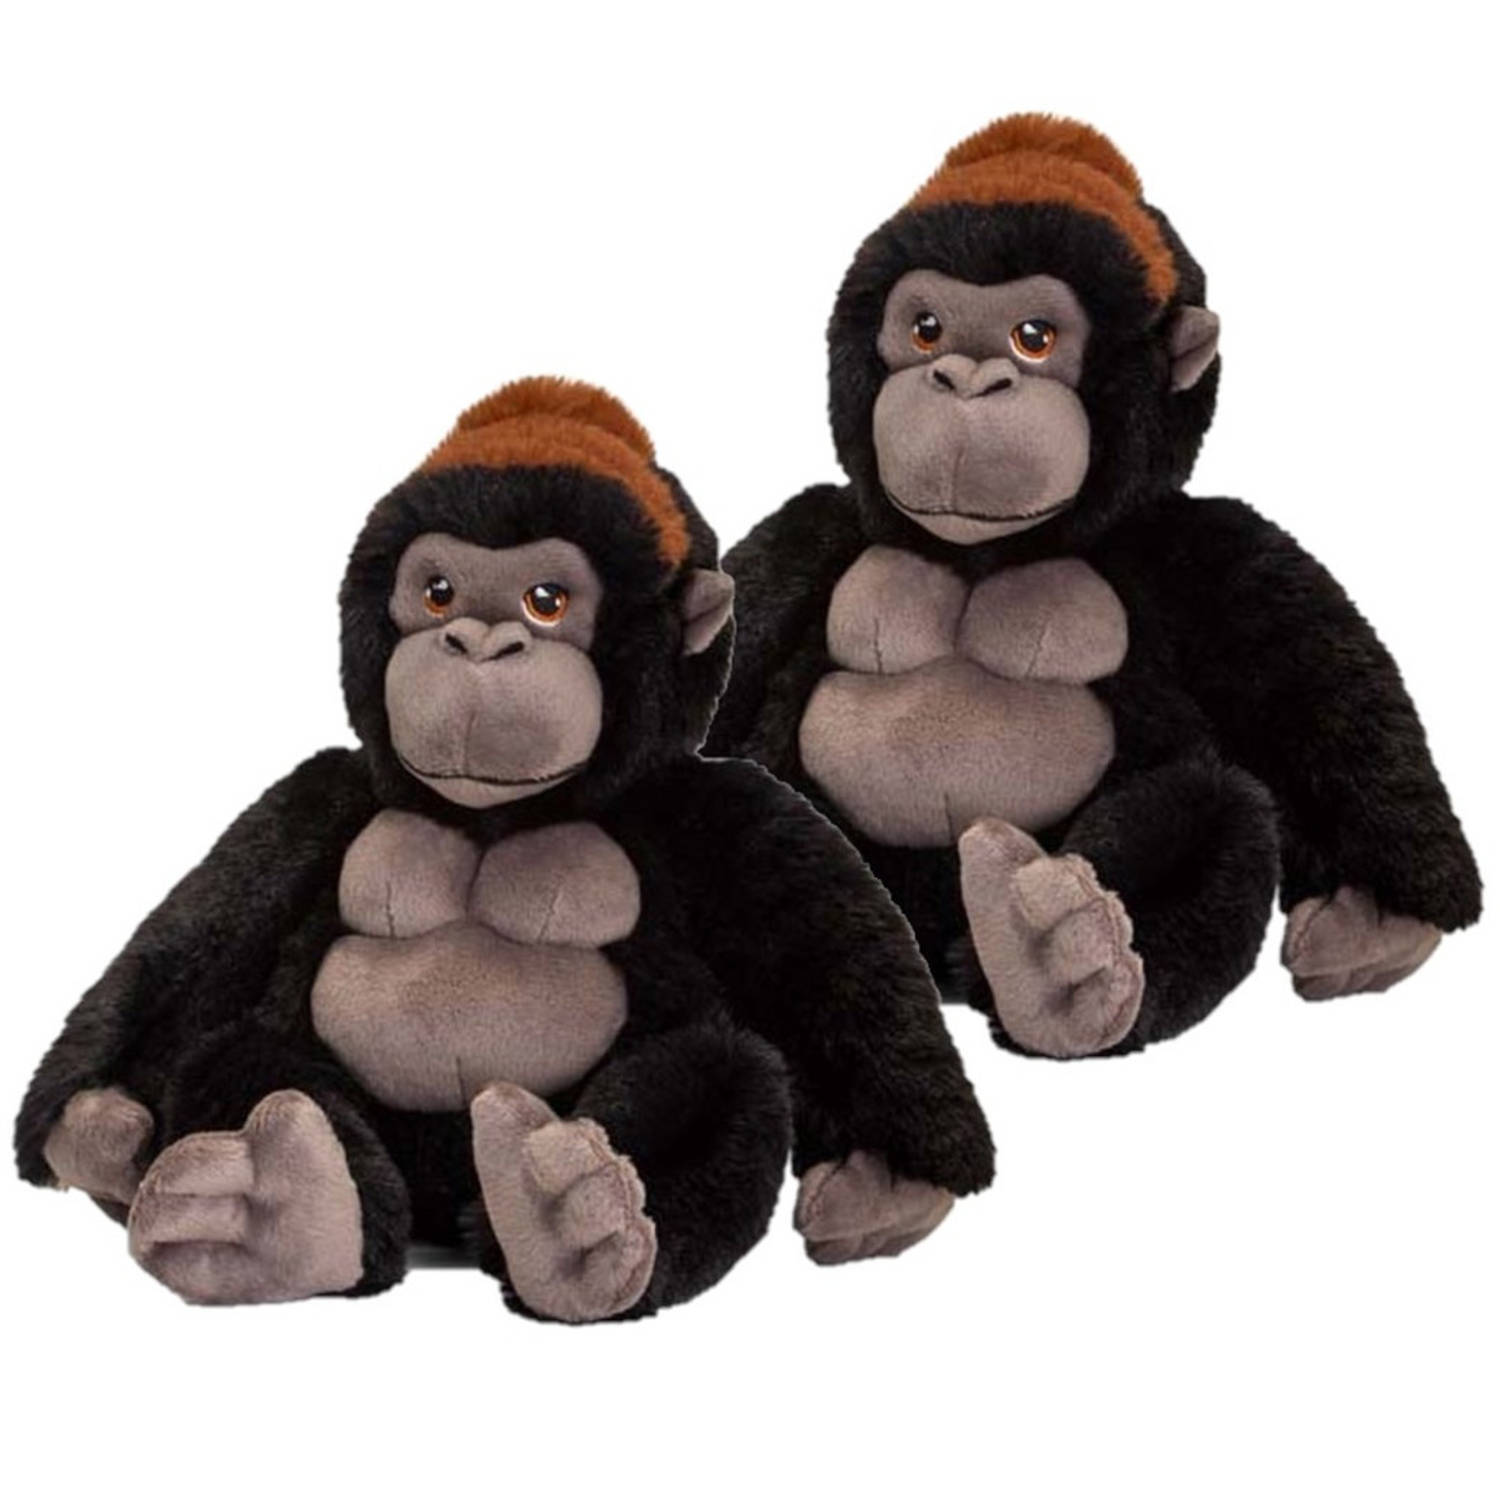 Keel Toys 2x stuks pluche knuffel Gorilla aap/apen van 20 cm - Dieren knuffelbeesten voor kinderen of decoratie